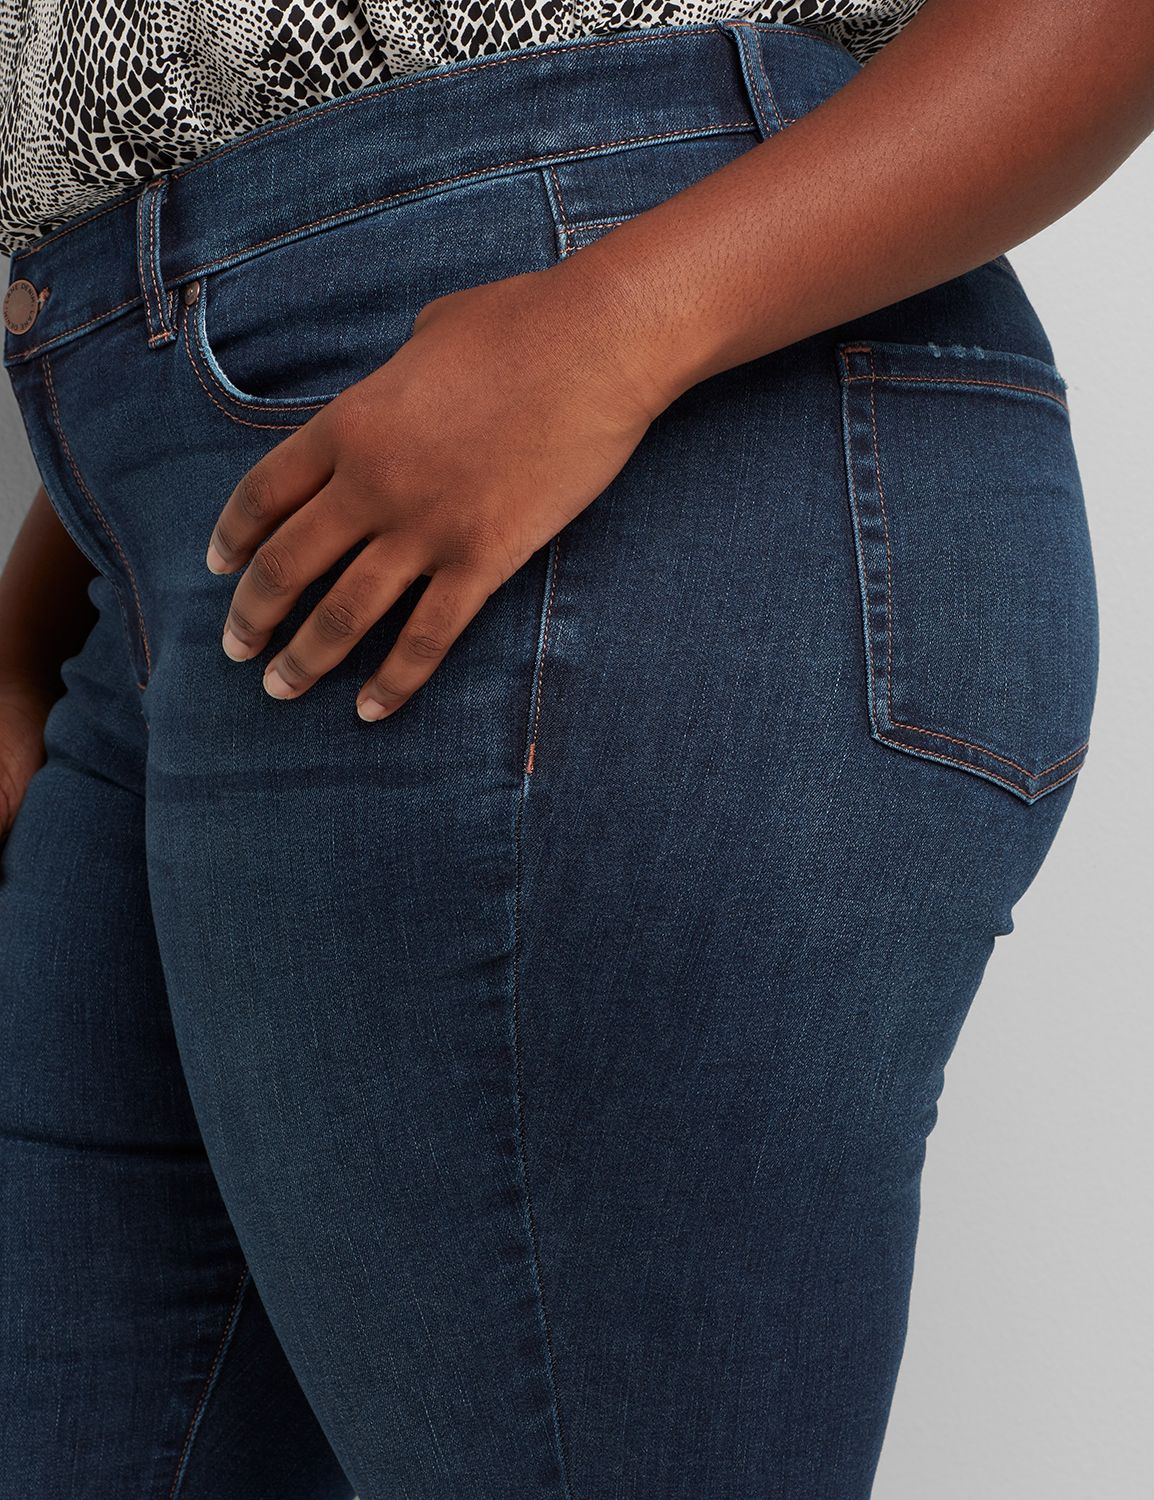  Womens Skinney Jean Shorts Flex High Waist Butt Rise